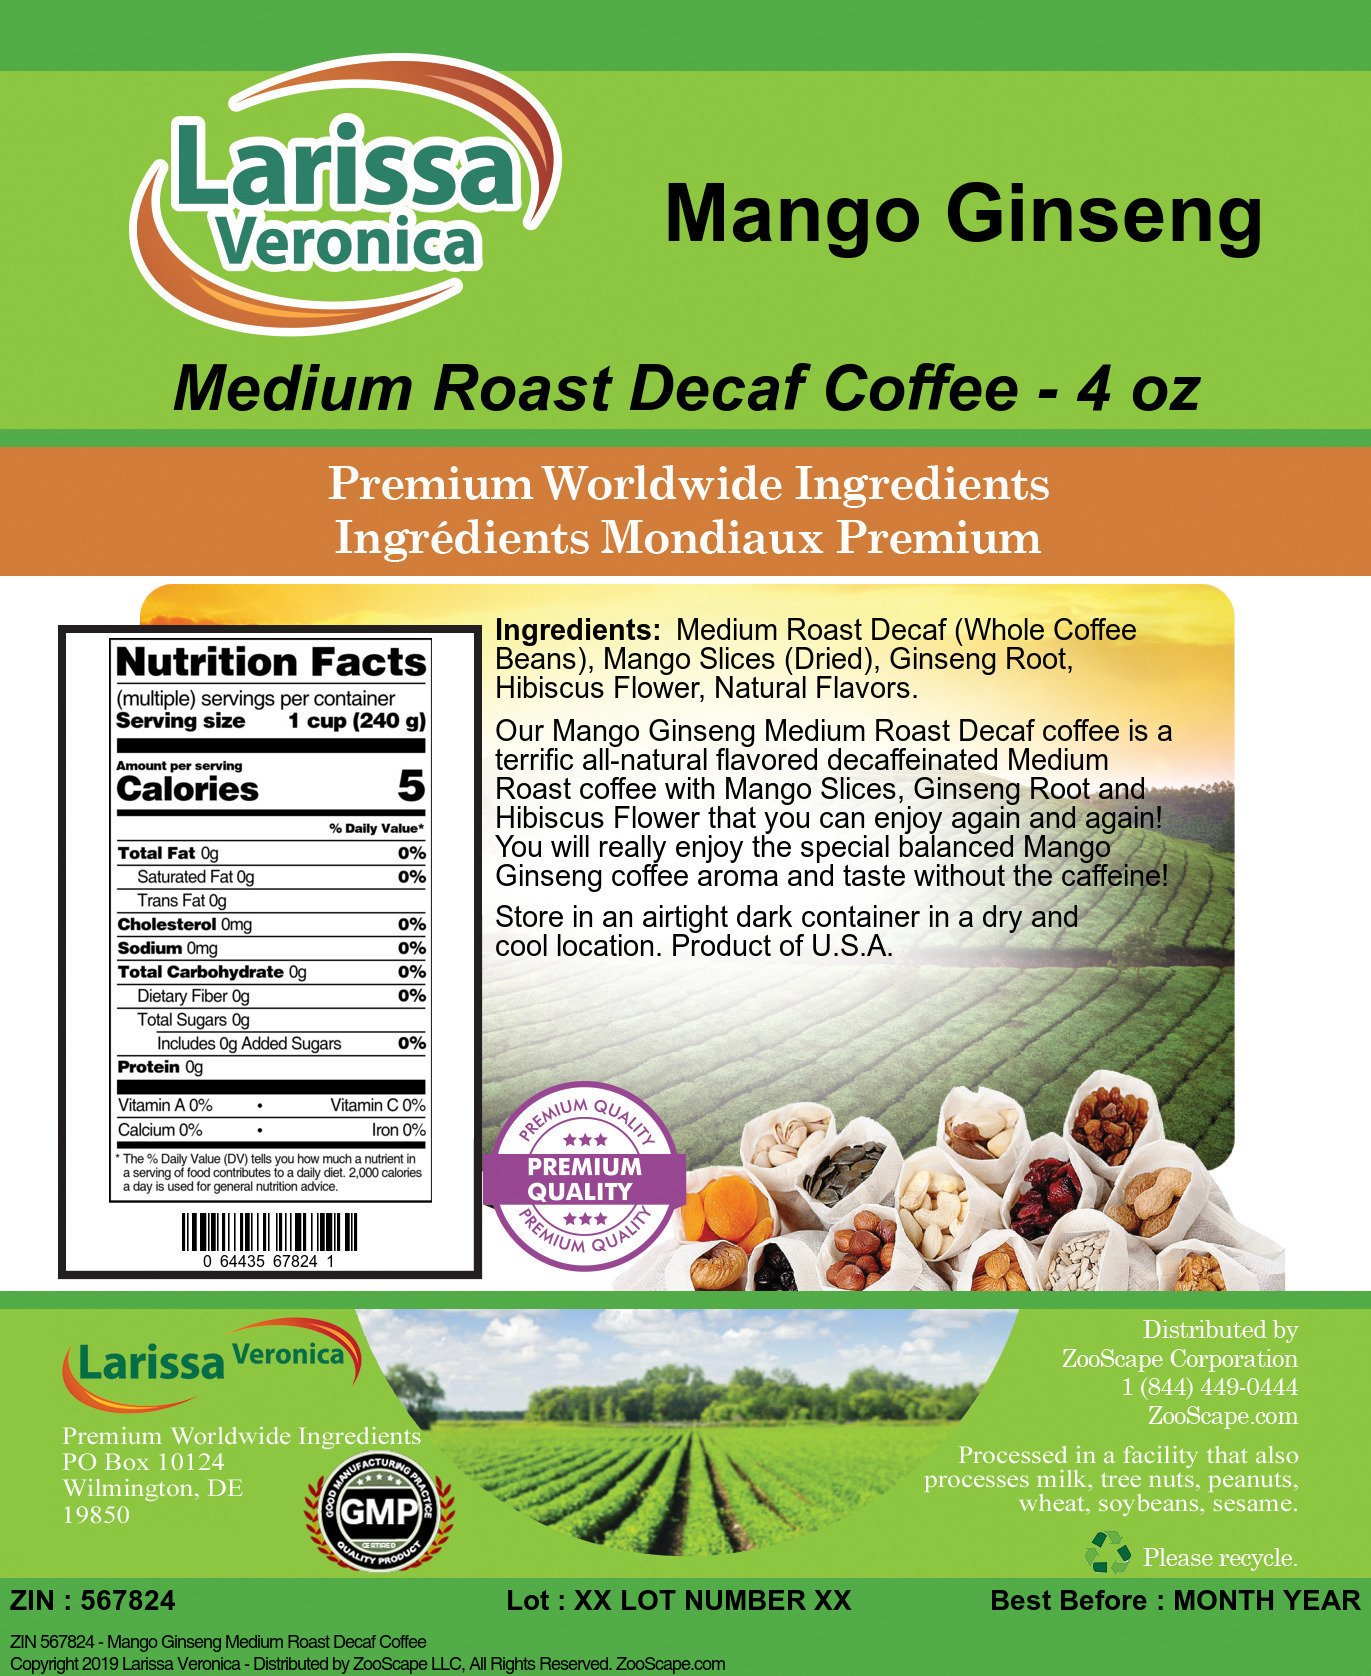 Mango Ginseng Medium Roast Decaf Coffee - Label